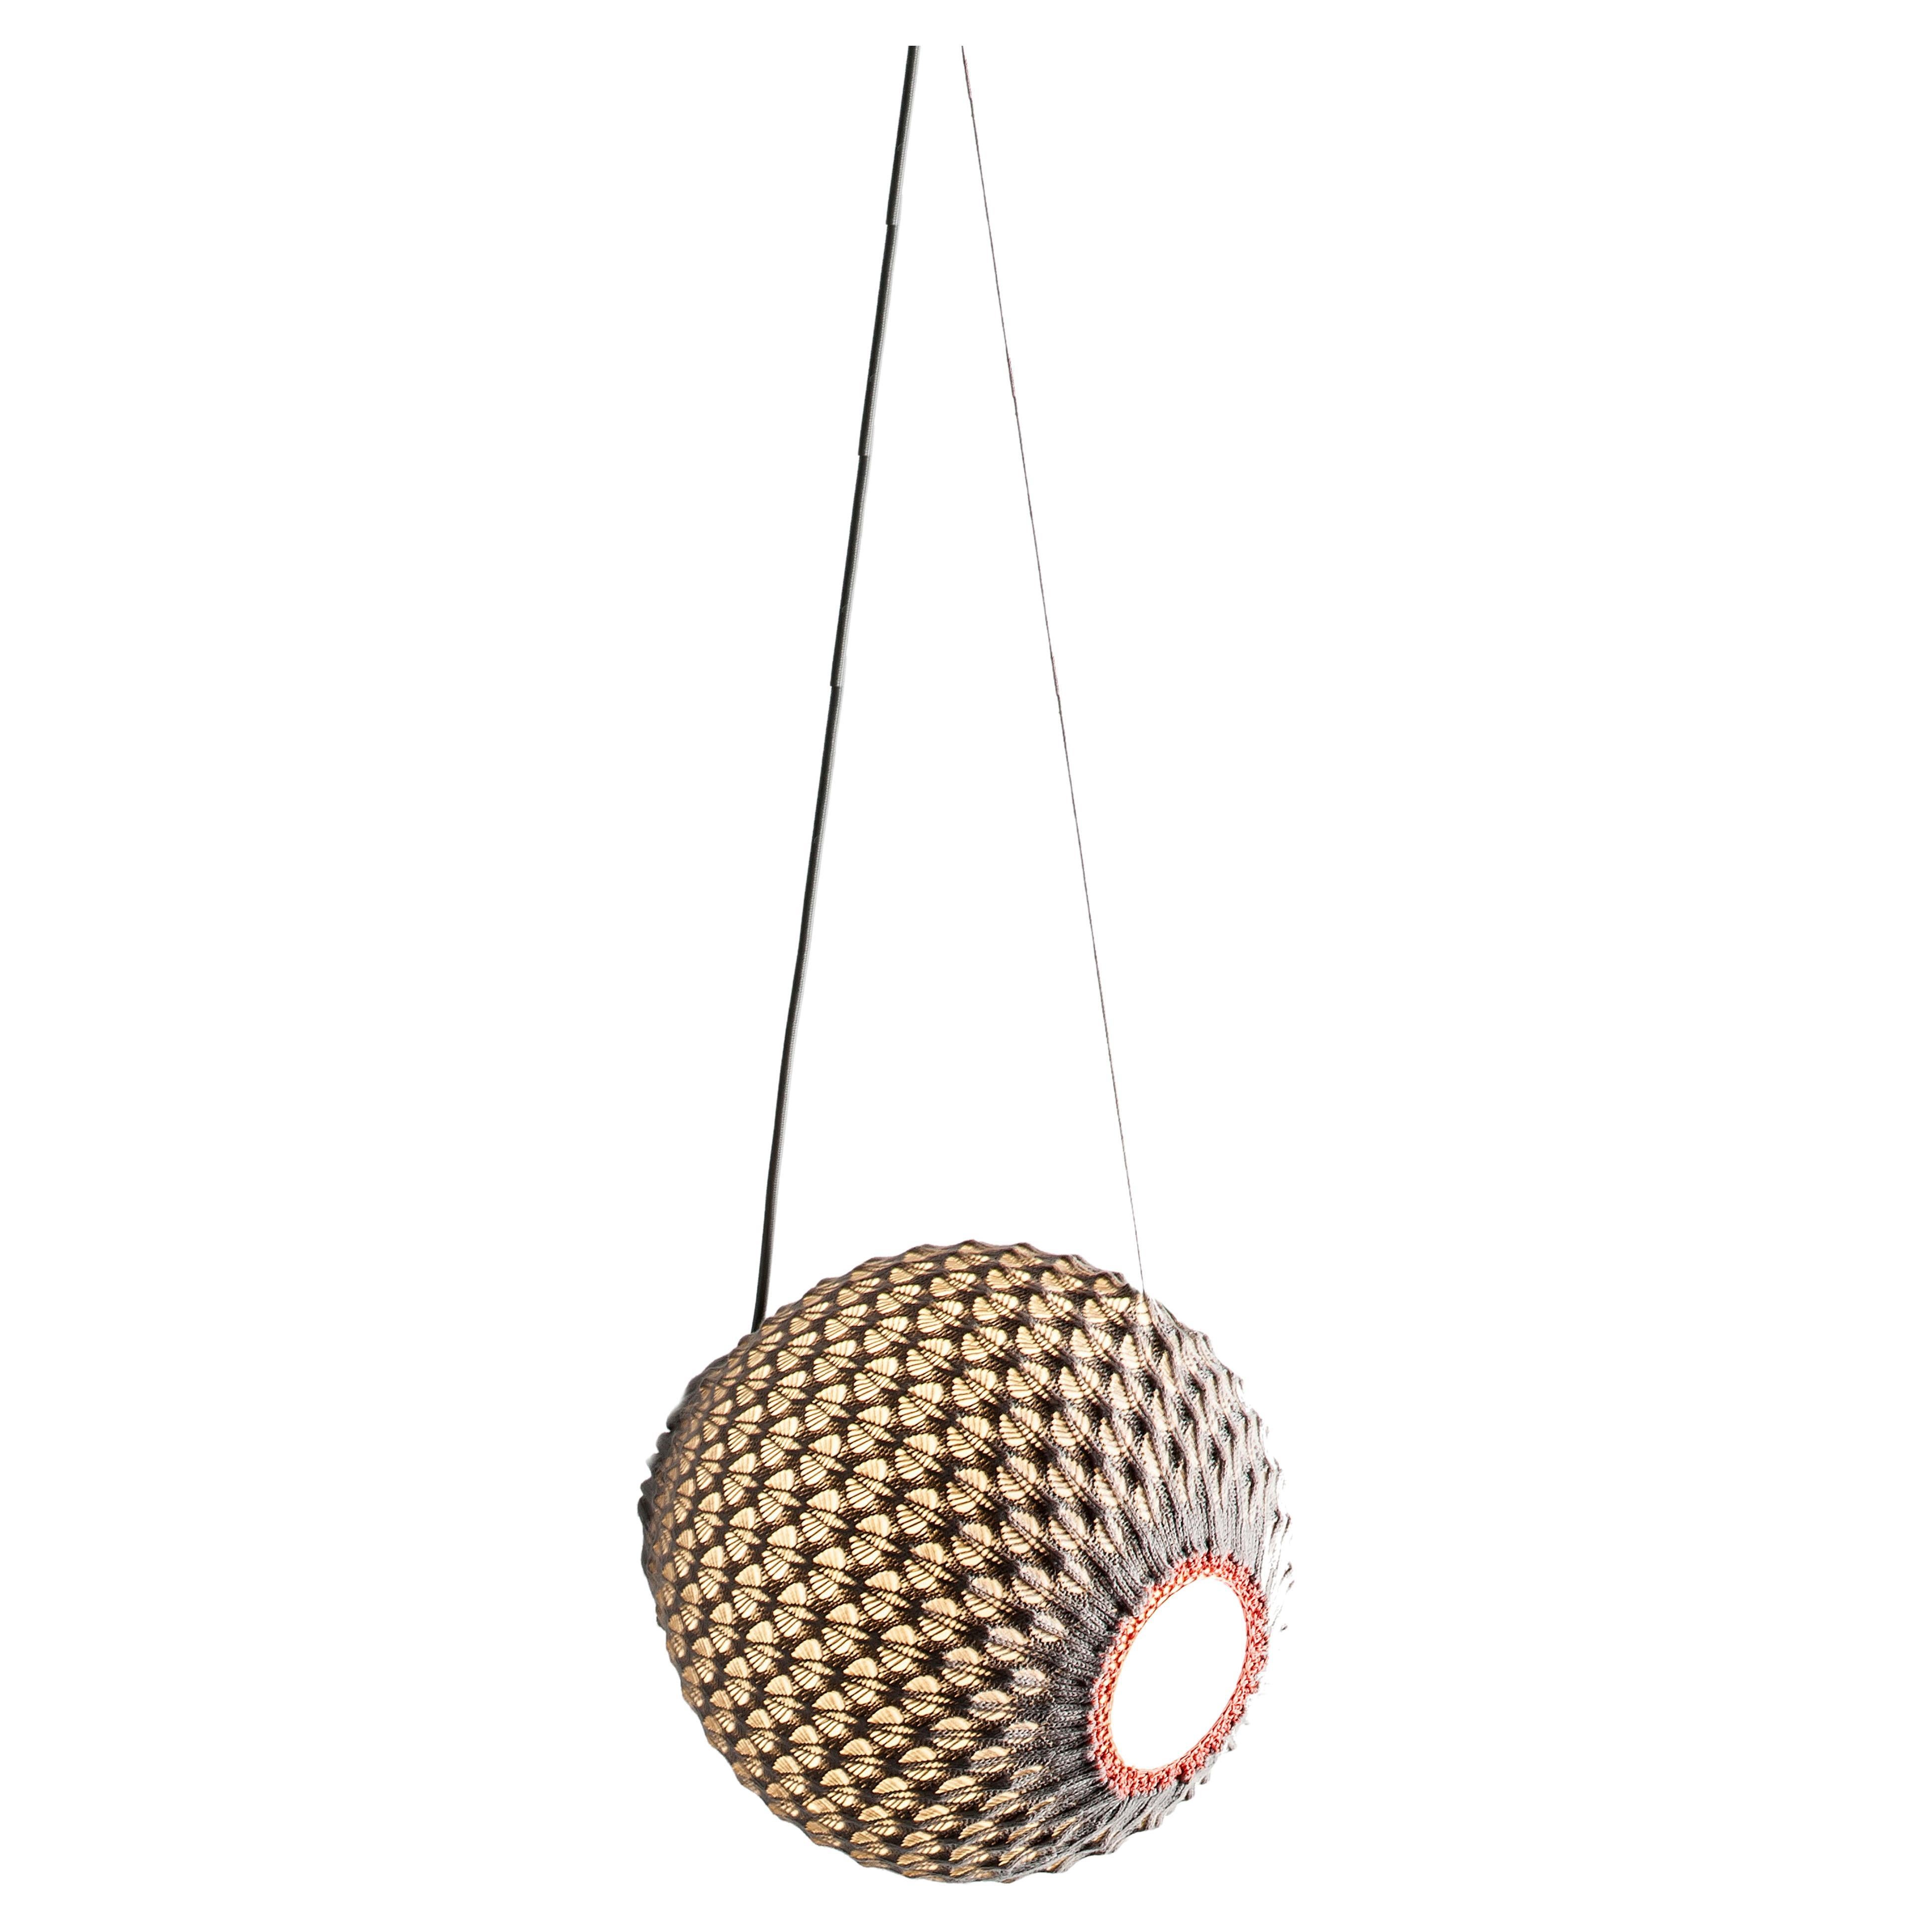 Knitted Lighting Fixture  - Pendant Tilt - Small size 30cm diameter For Sale